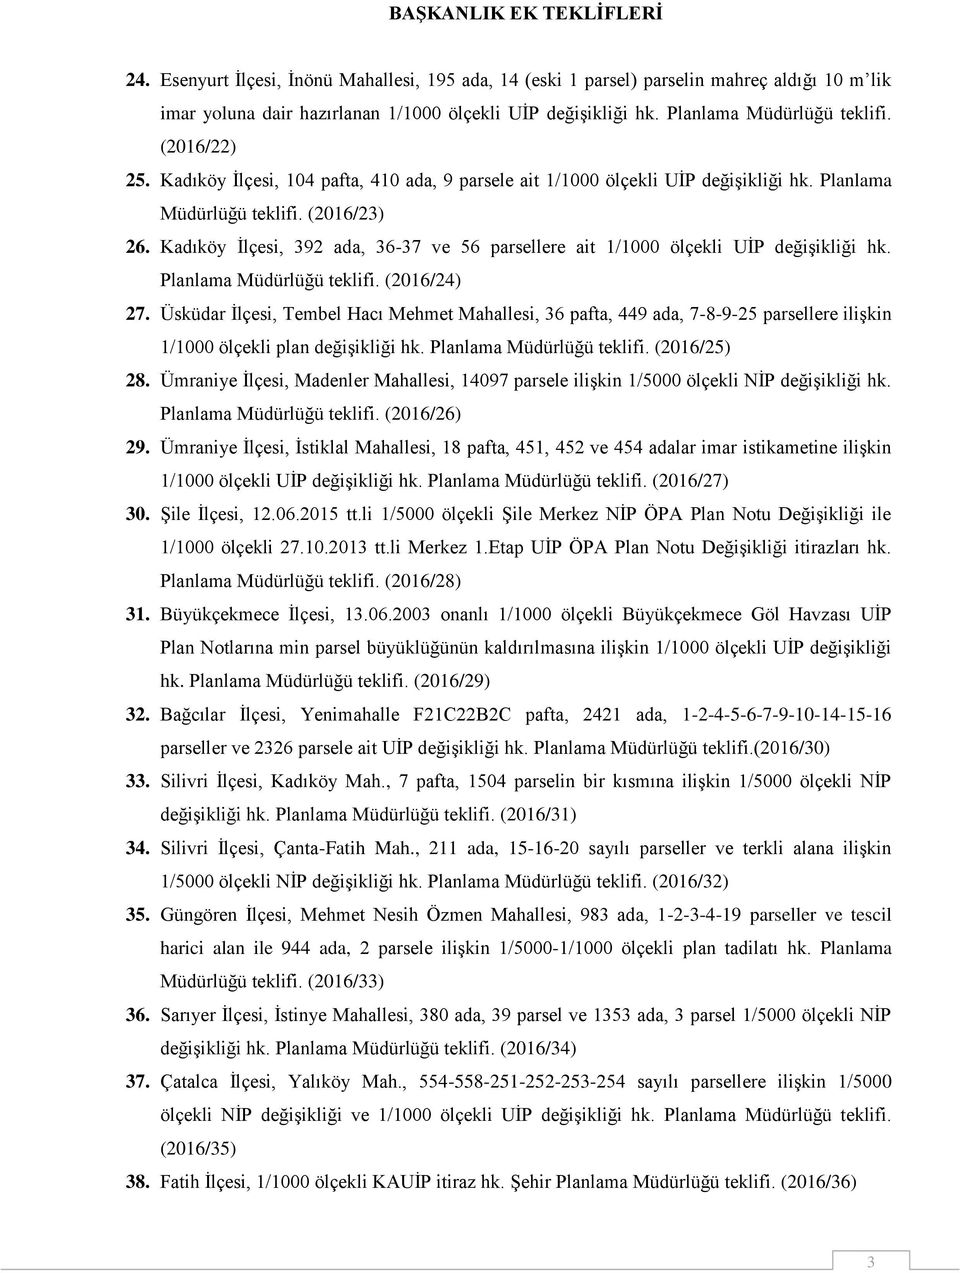 Kadıköy İlçesi, 392 ada, 36-37 ve 56 parsellere ait 1/1000 ölçekli UİP değişikliği hk. Planlama Müdürlüğü teklifi. (2016/24) 27.